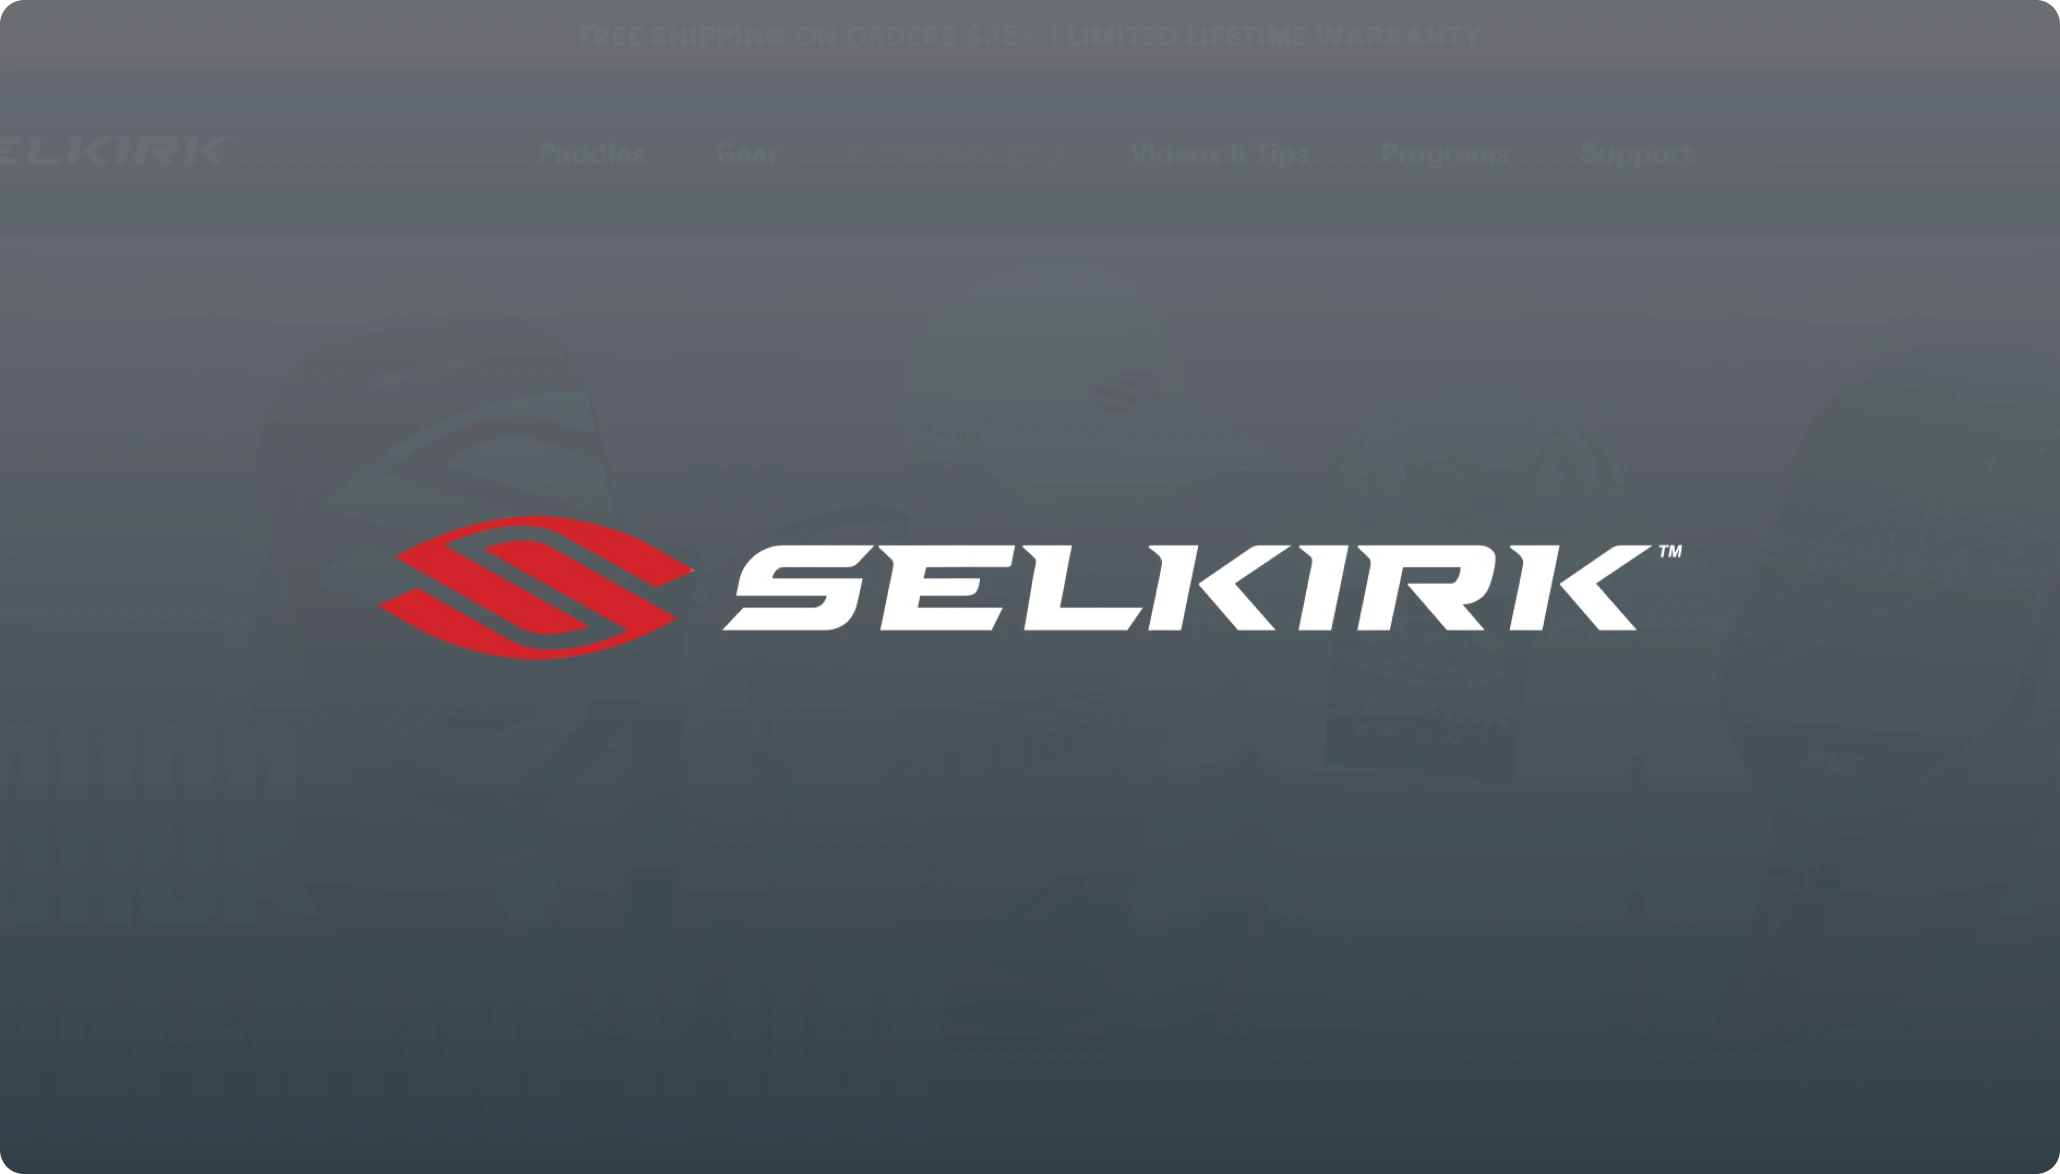 Selkirk experiences 66% increase in operational efficiency